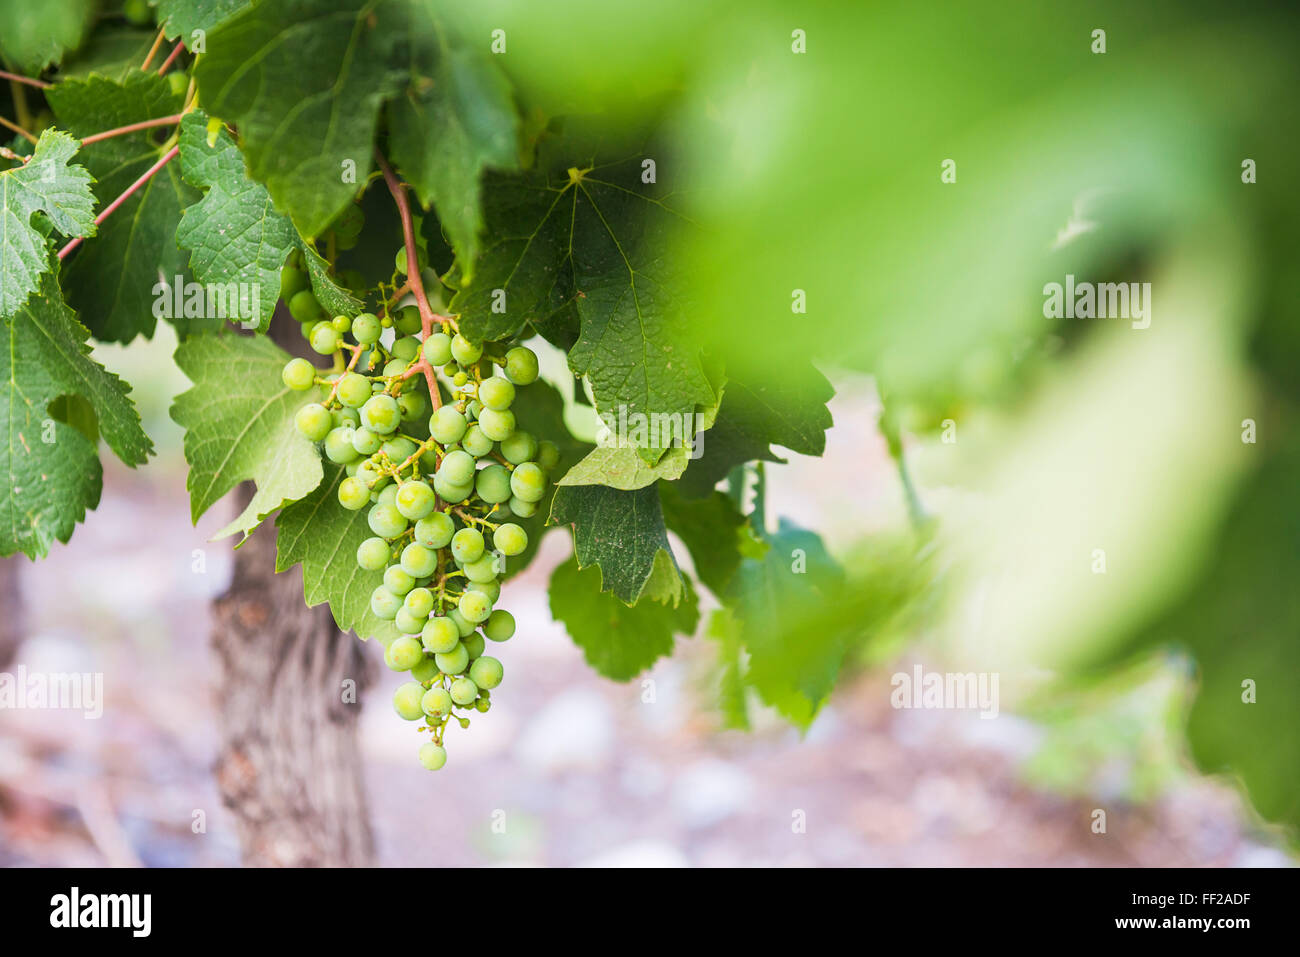 Trauben hängen auf einem Weinstock zu Bodega RMa AzuRM, ein Weingut in Uco VaRMRMey (VaRMRMe de Uco), einem Weinbaugebiet in der Provinz Mendoza, Argentinien Stockfoto